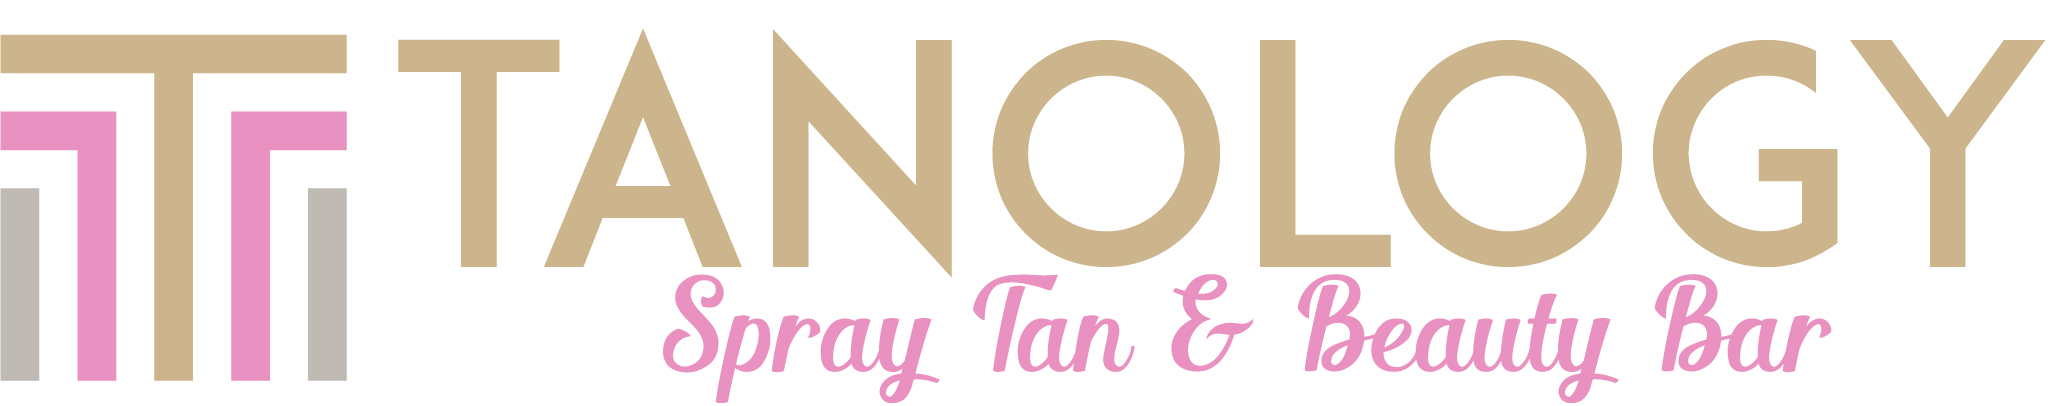 Tanology logo